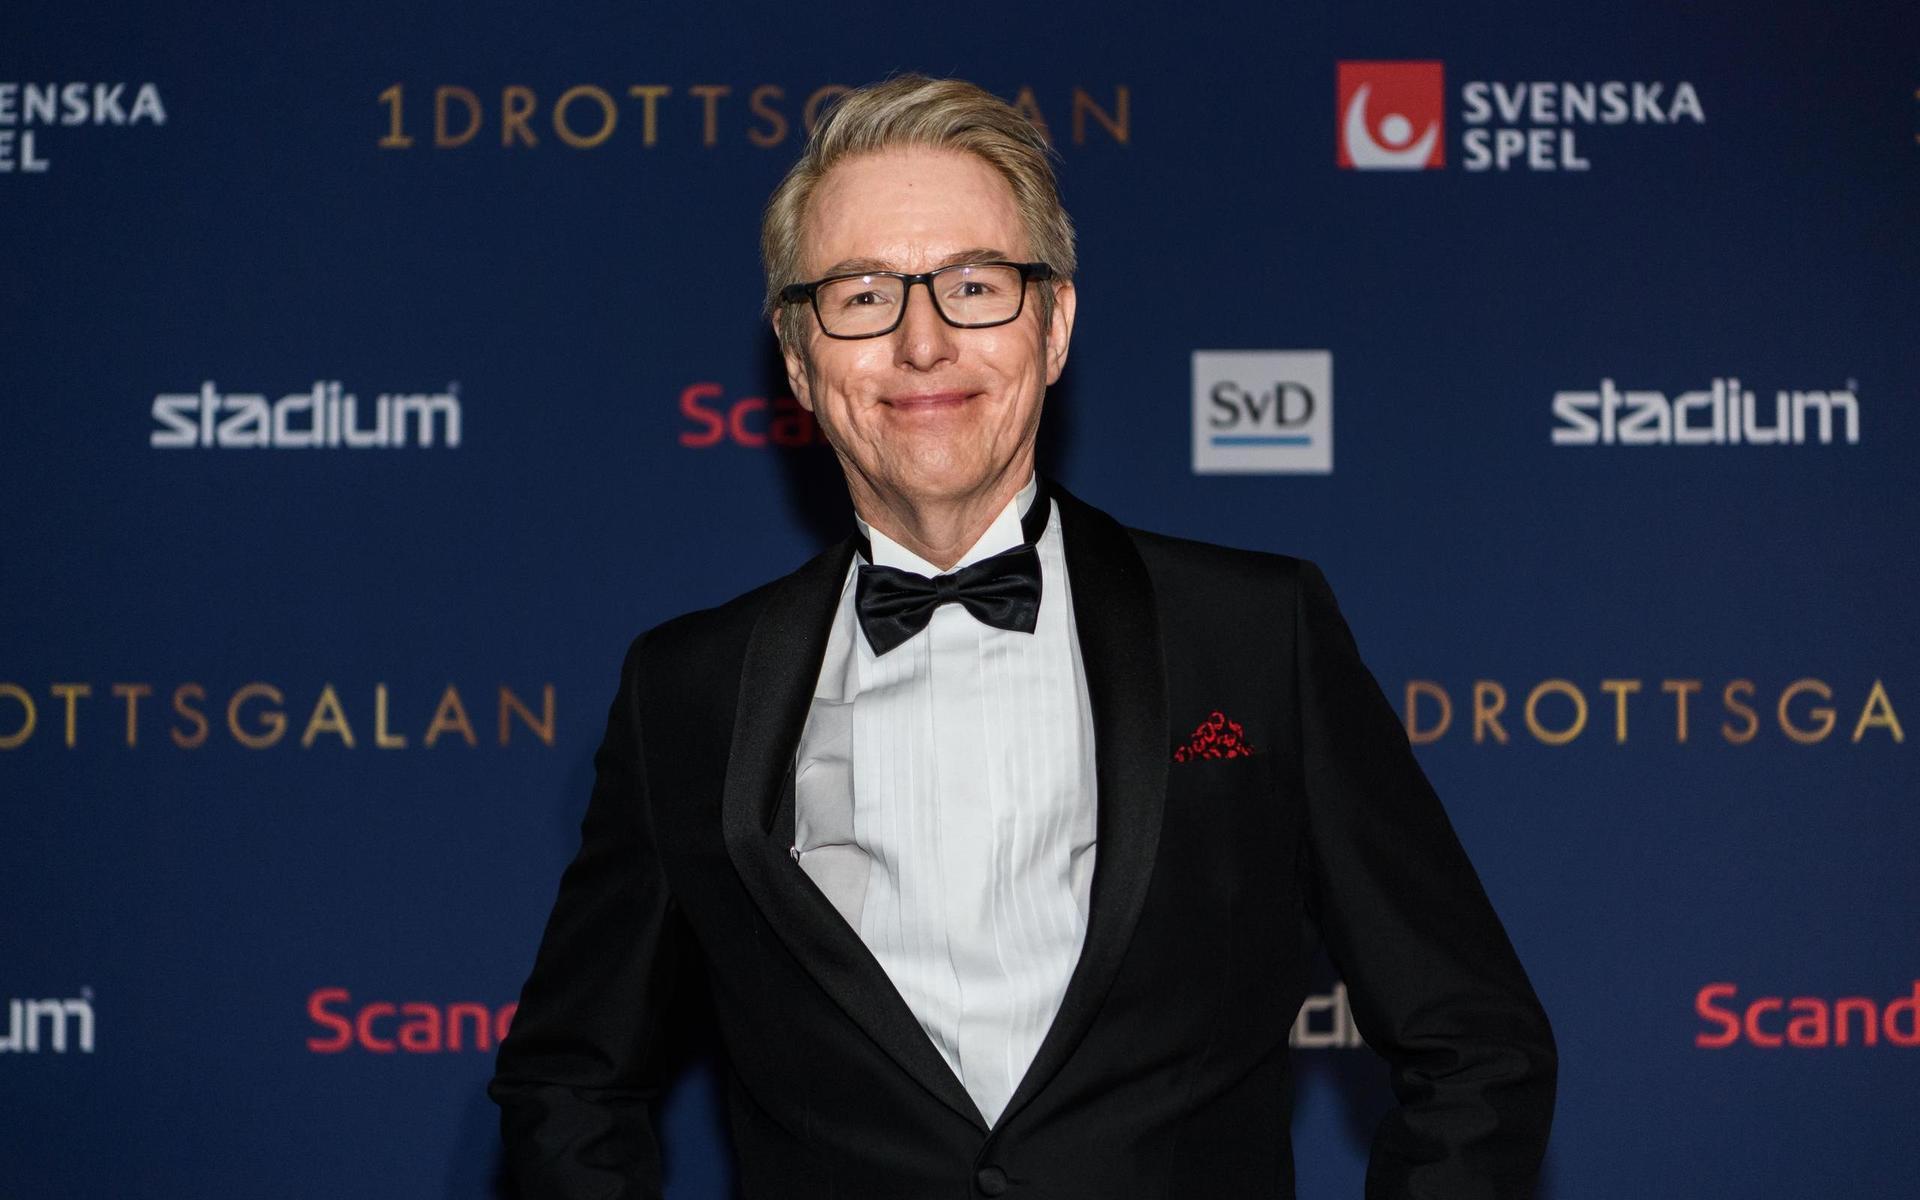 Radiosportens Bengt Skött, poserar på röda mattan  under Idrottsgalan.